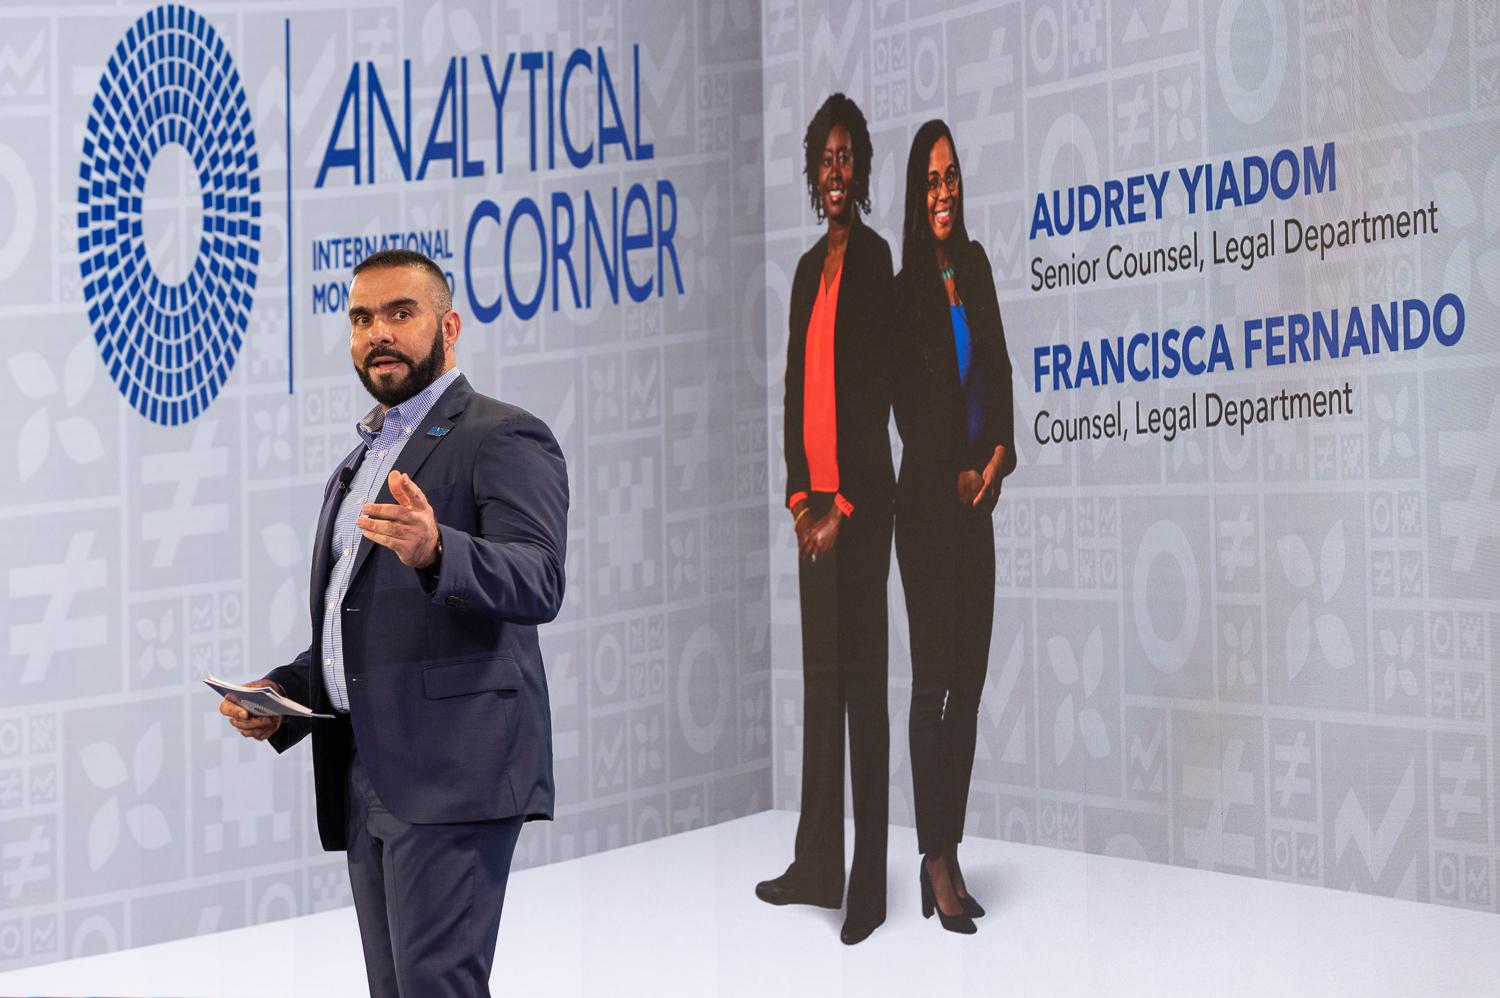 Events - Audrey Yiadom/Francisca Fernando  Presents the Analytical...